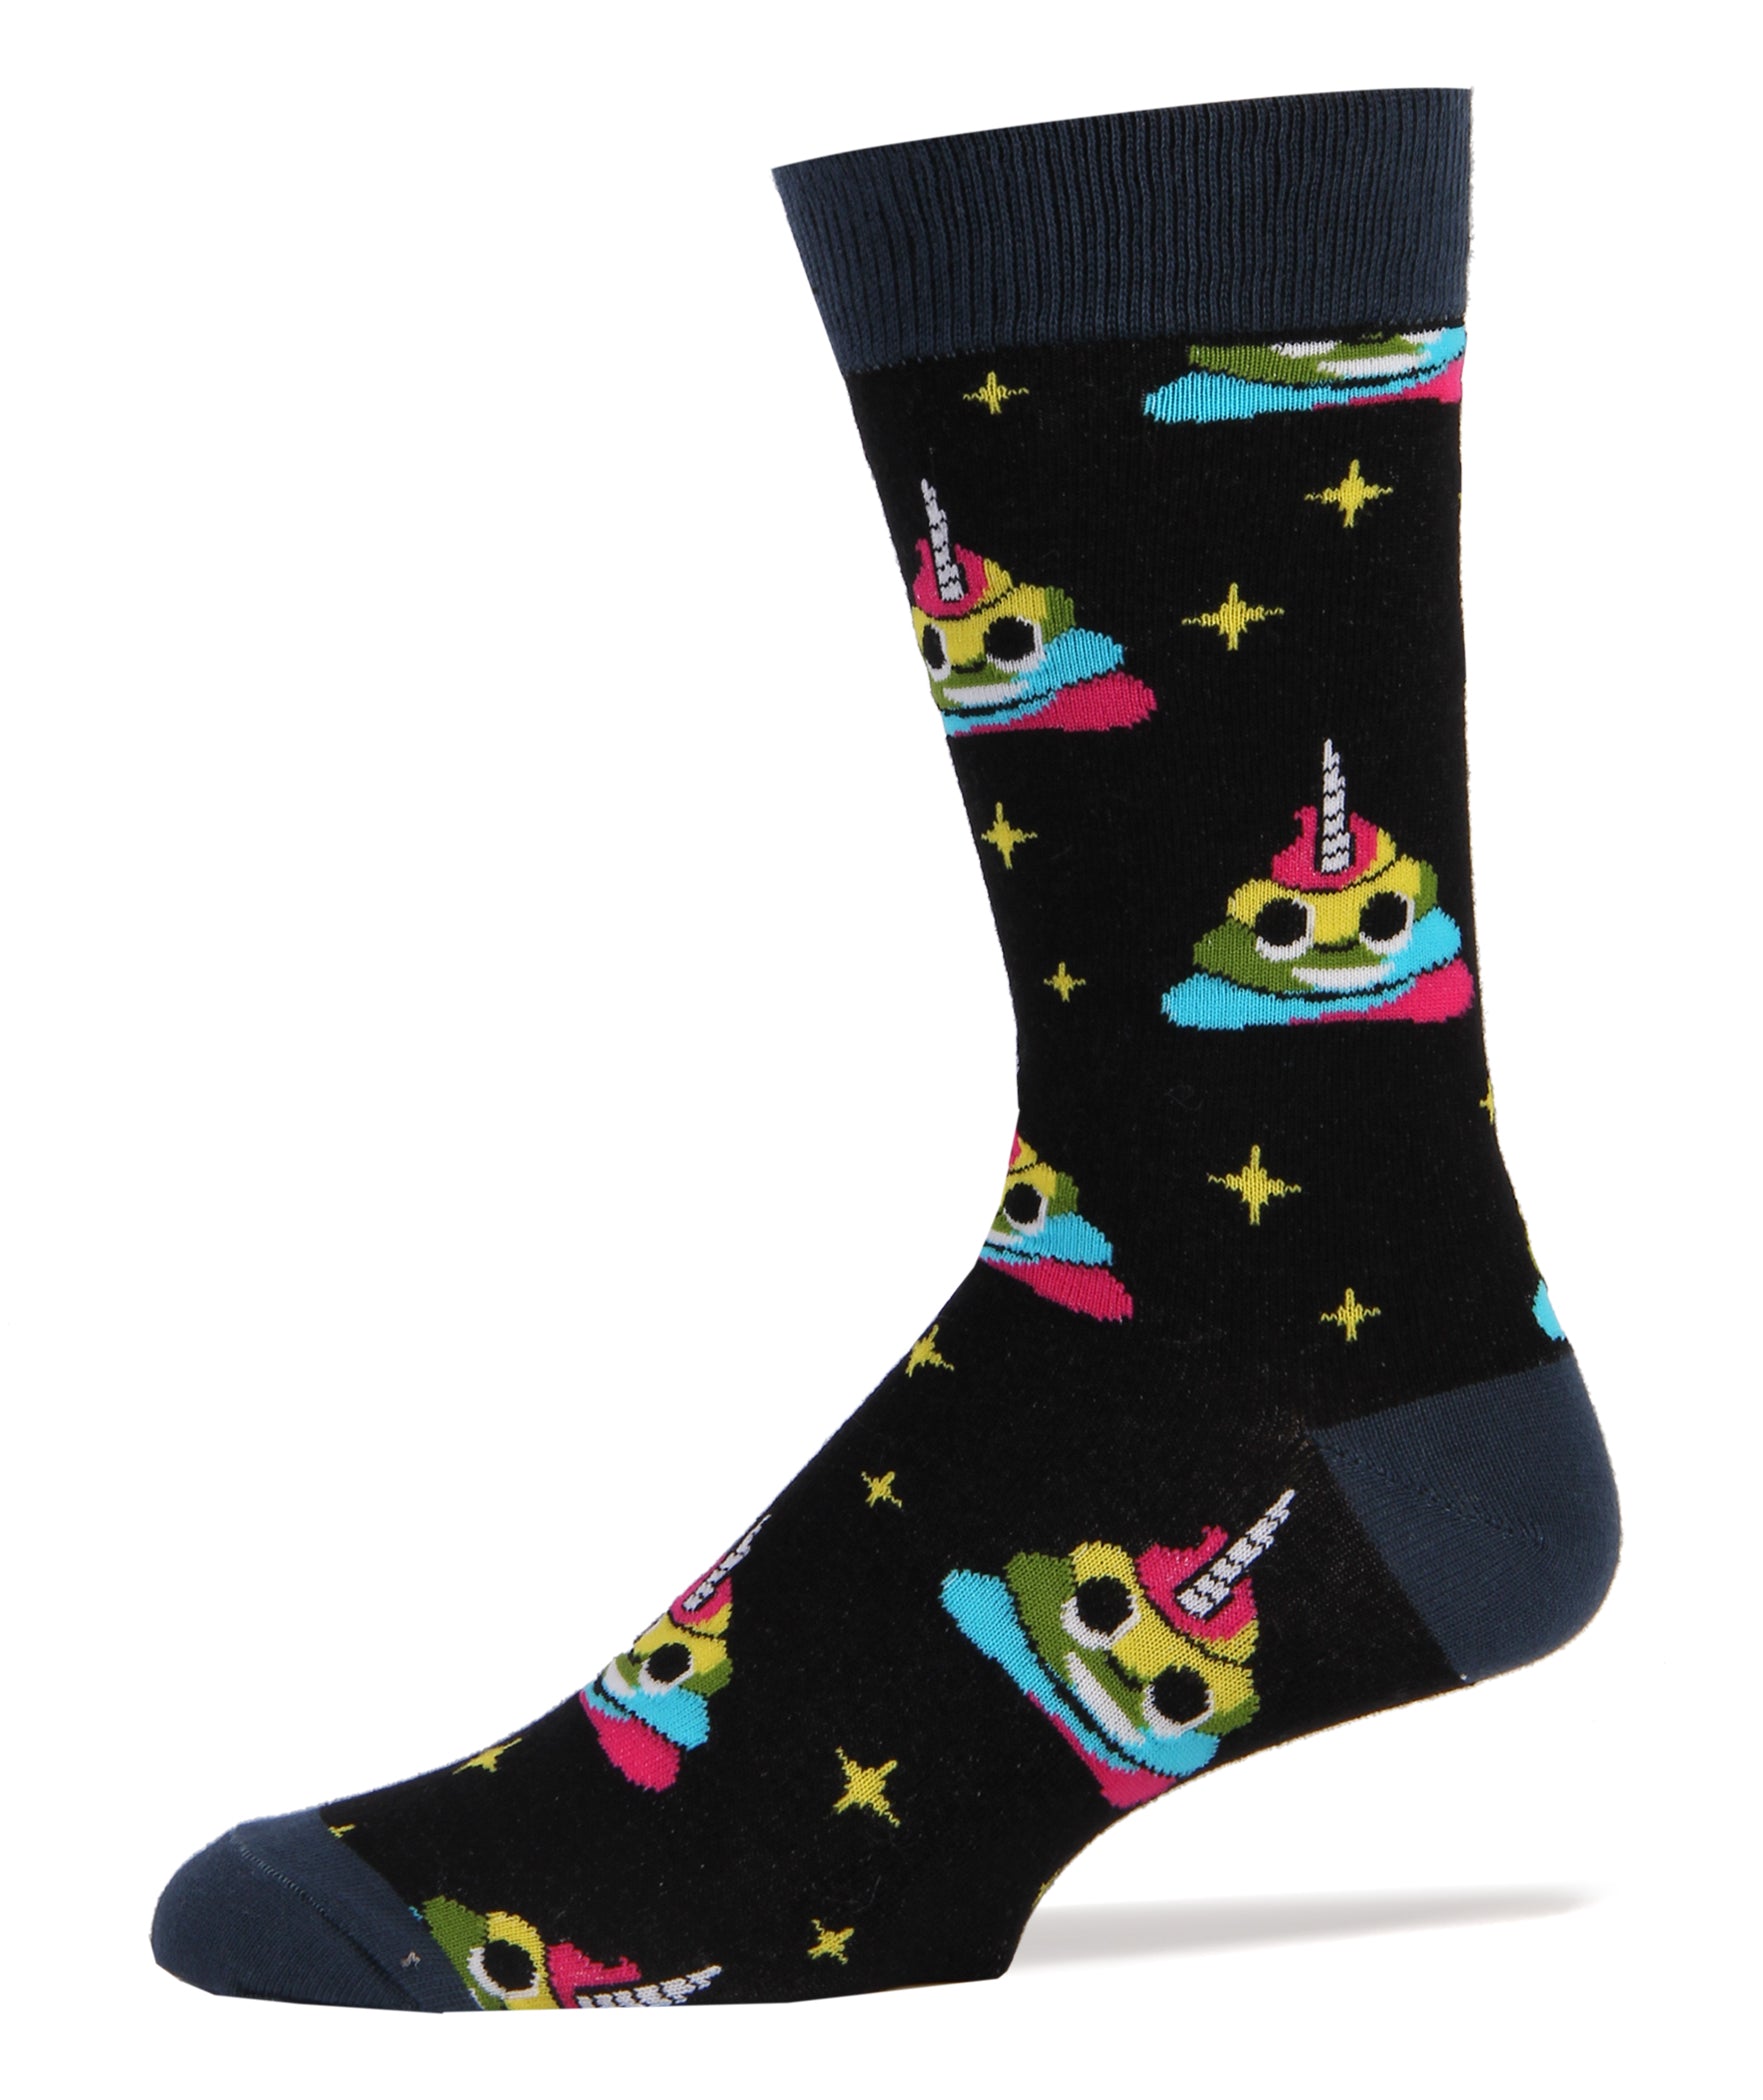 UnicornPoo Socks | Novelty Crew Socks For Men